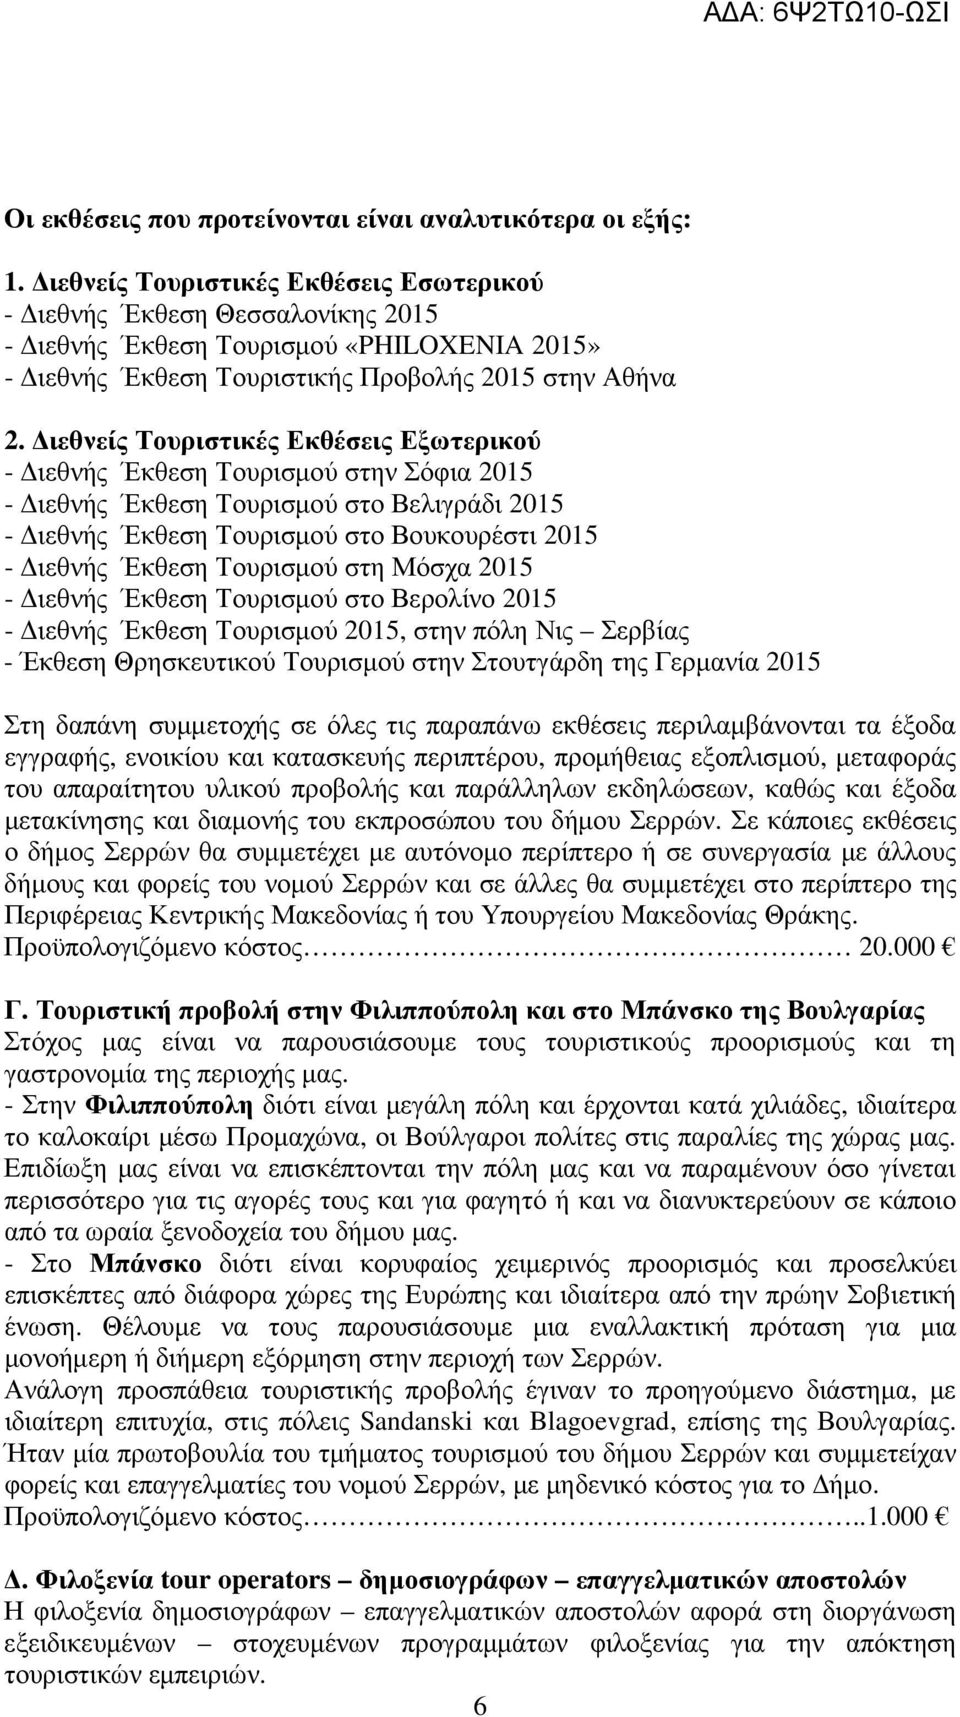 ιεθνείς Τουριστικές Εκθέσεις Εξωτερικού - ιεθνής Έκθεση Τουρισµού στην Σόφια 2015 - ιεθνής Έκθεση Τουρισµού στο Βελιγράδι 2015 - ιεθνής Έκθεση Τουρισµού στο Βουκουρέστι 2015 - ιεθνής Έκθεση Τουρισµού